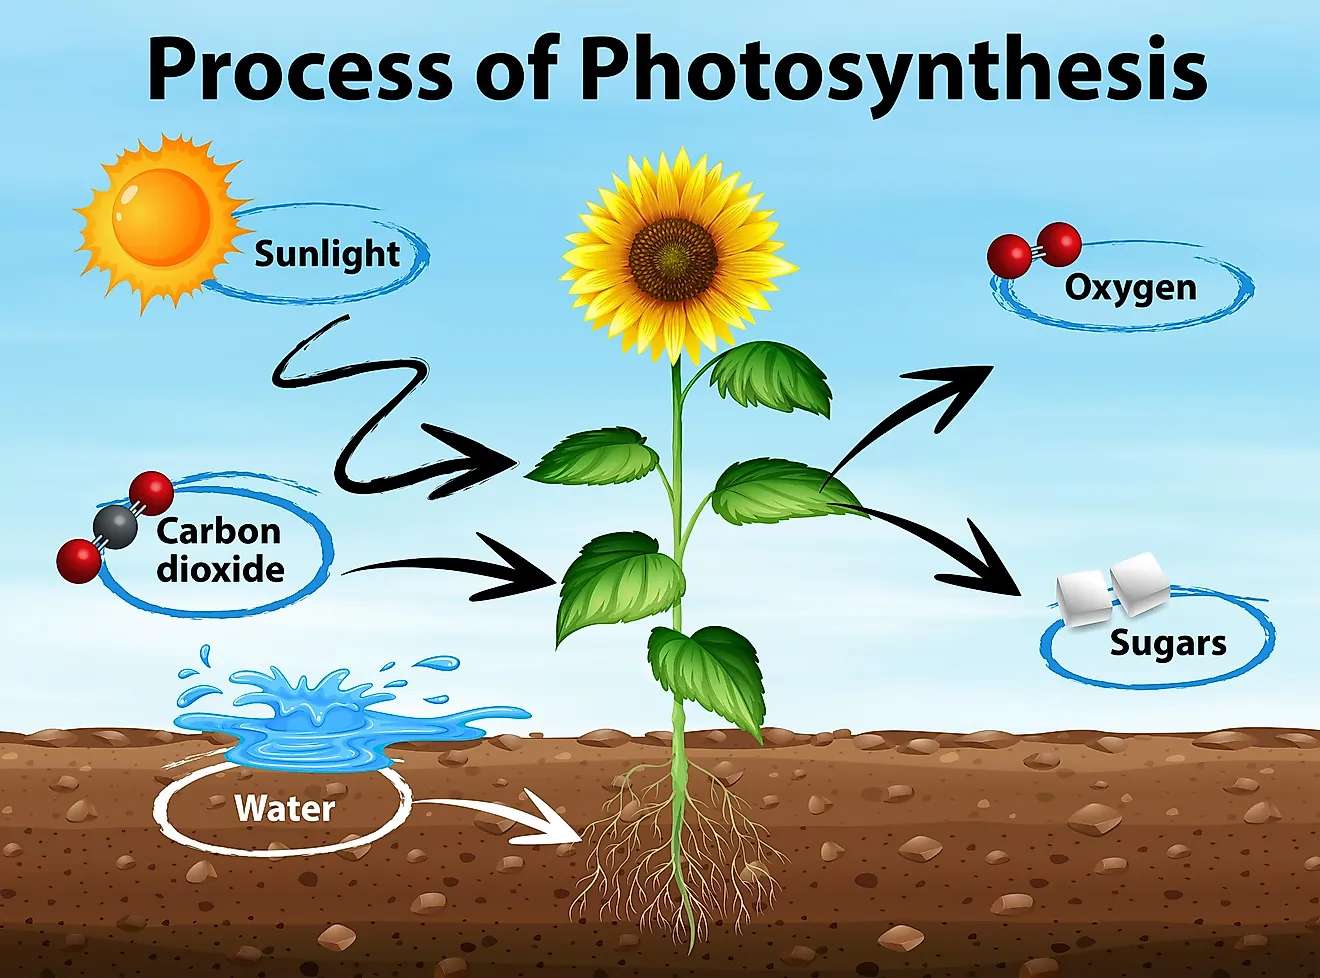 Fotosyntéza puzzle online z fotografie